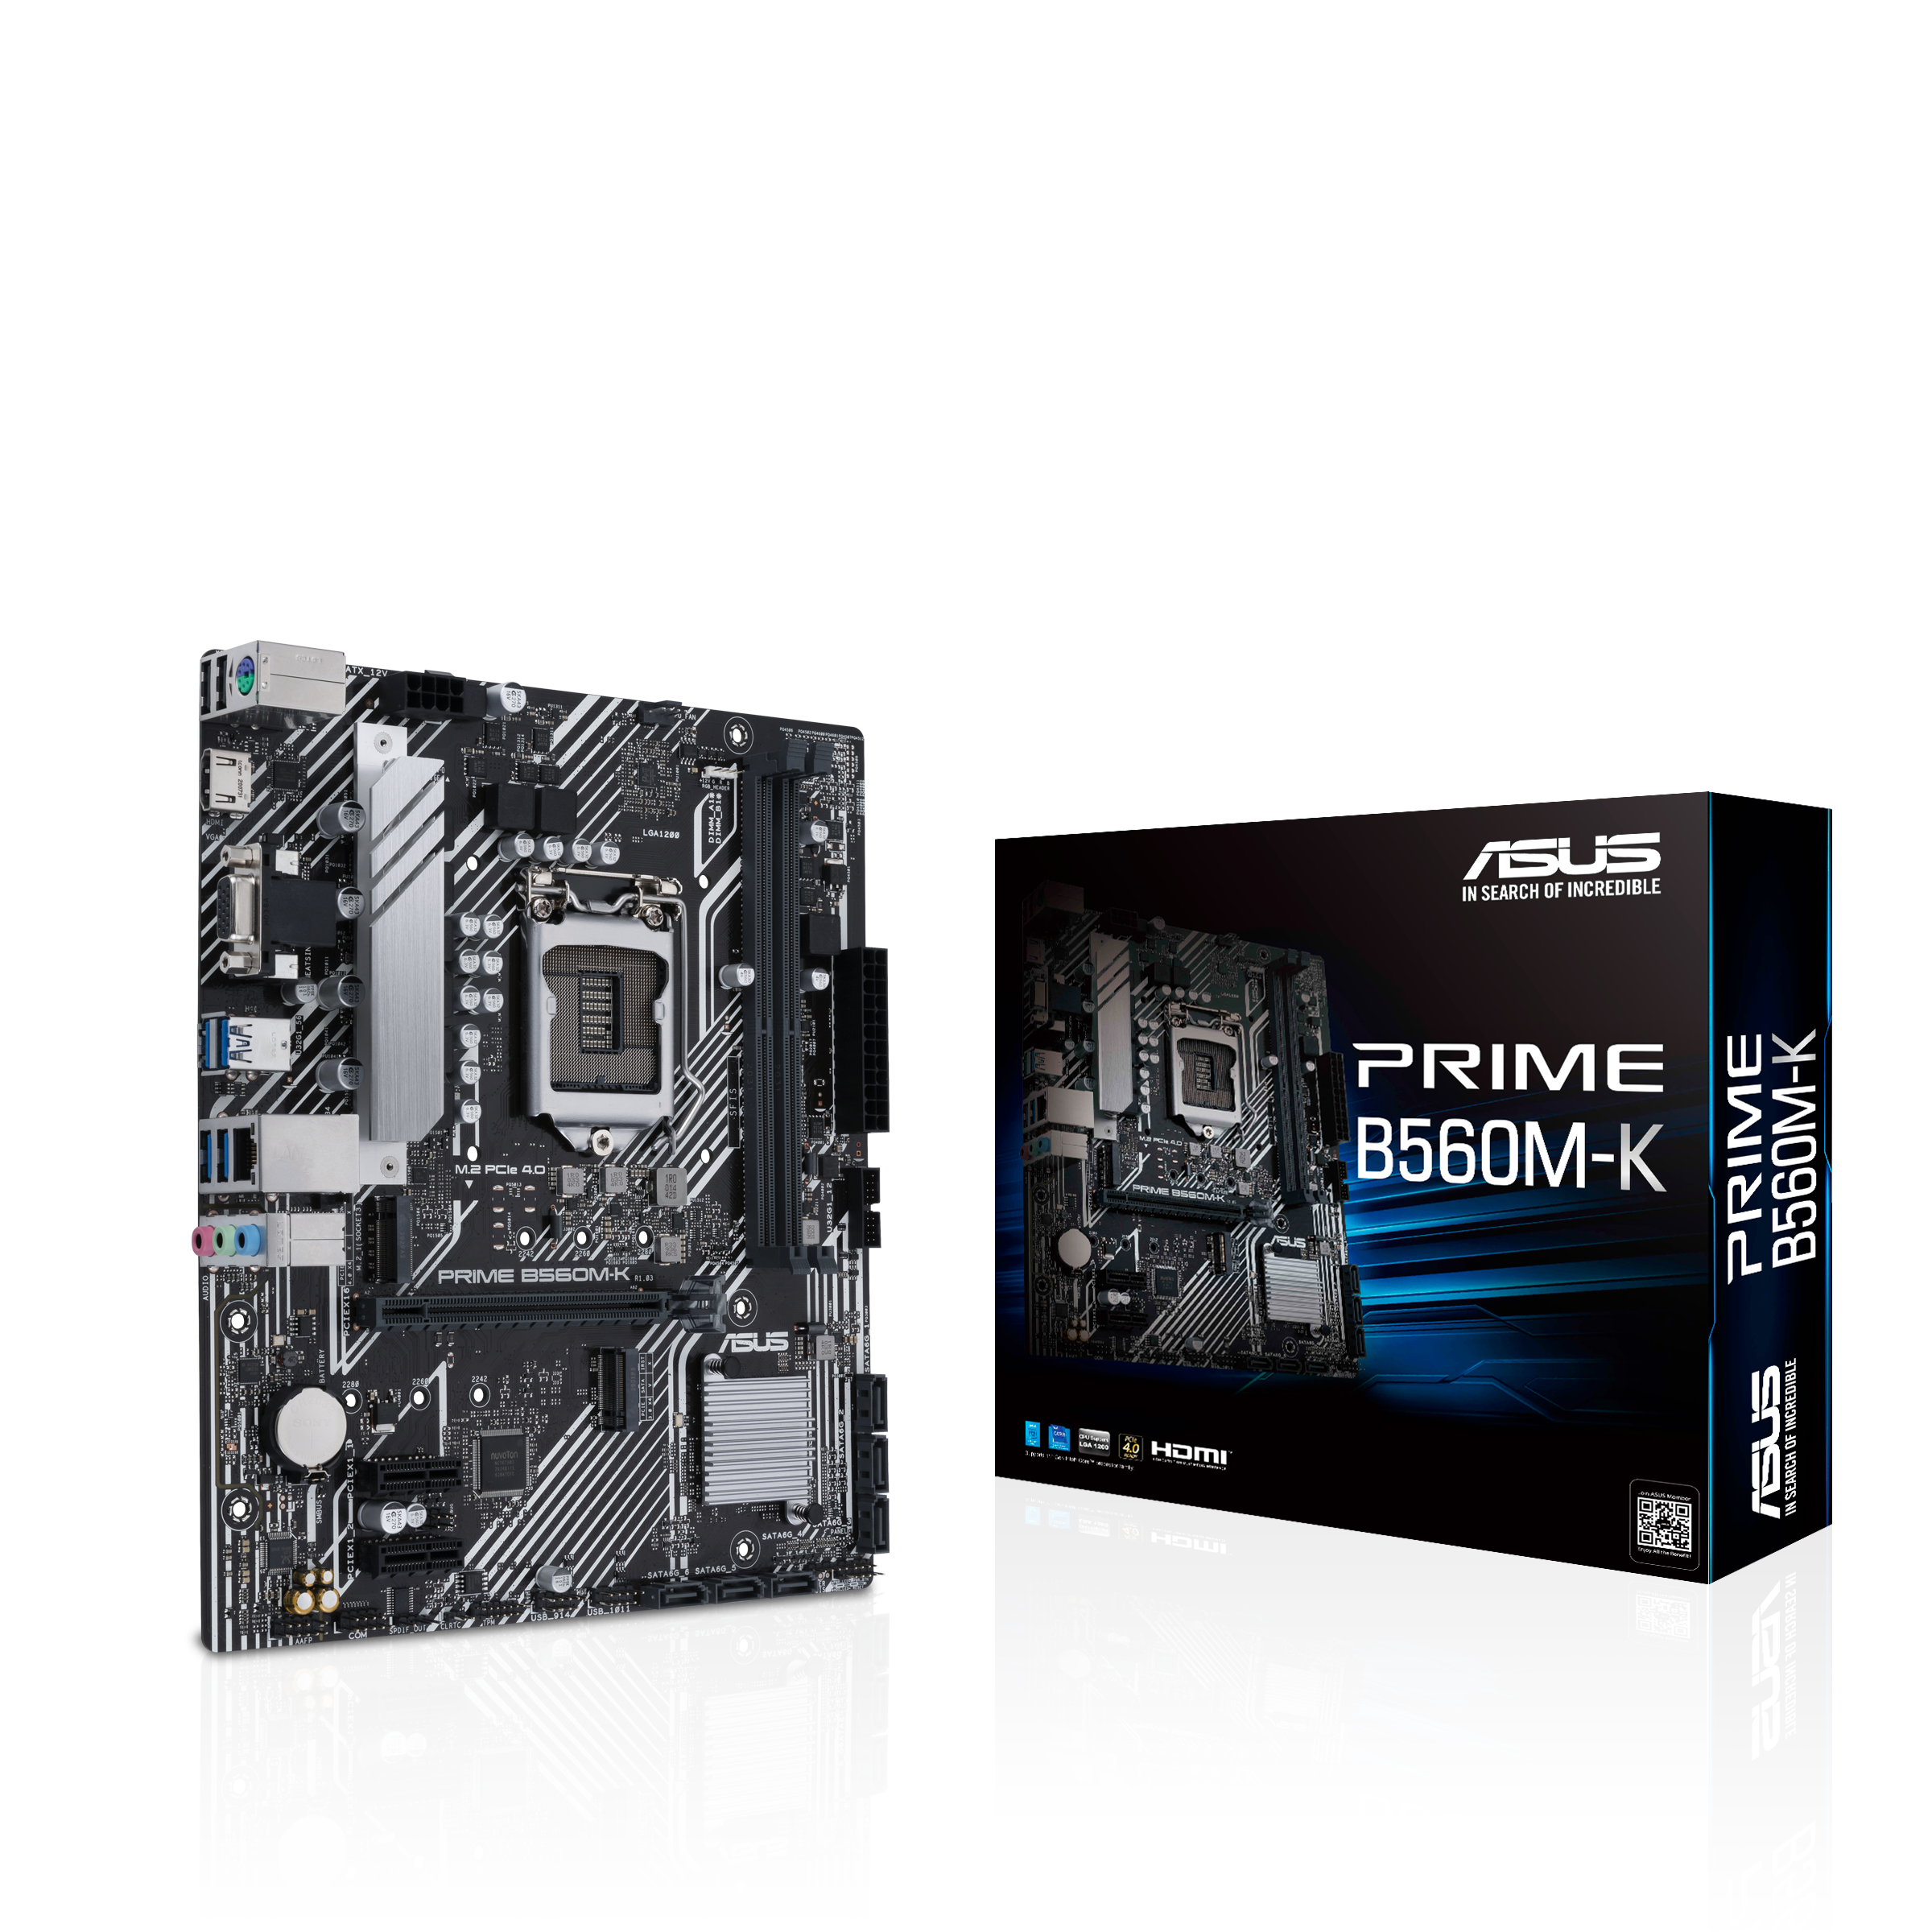 PRIME B560M-K